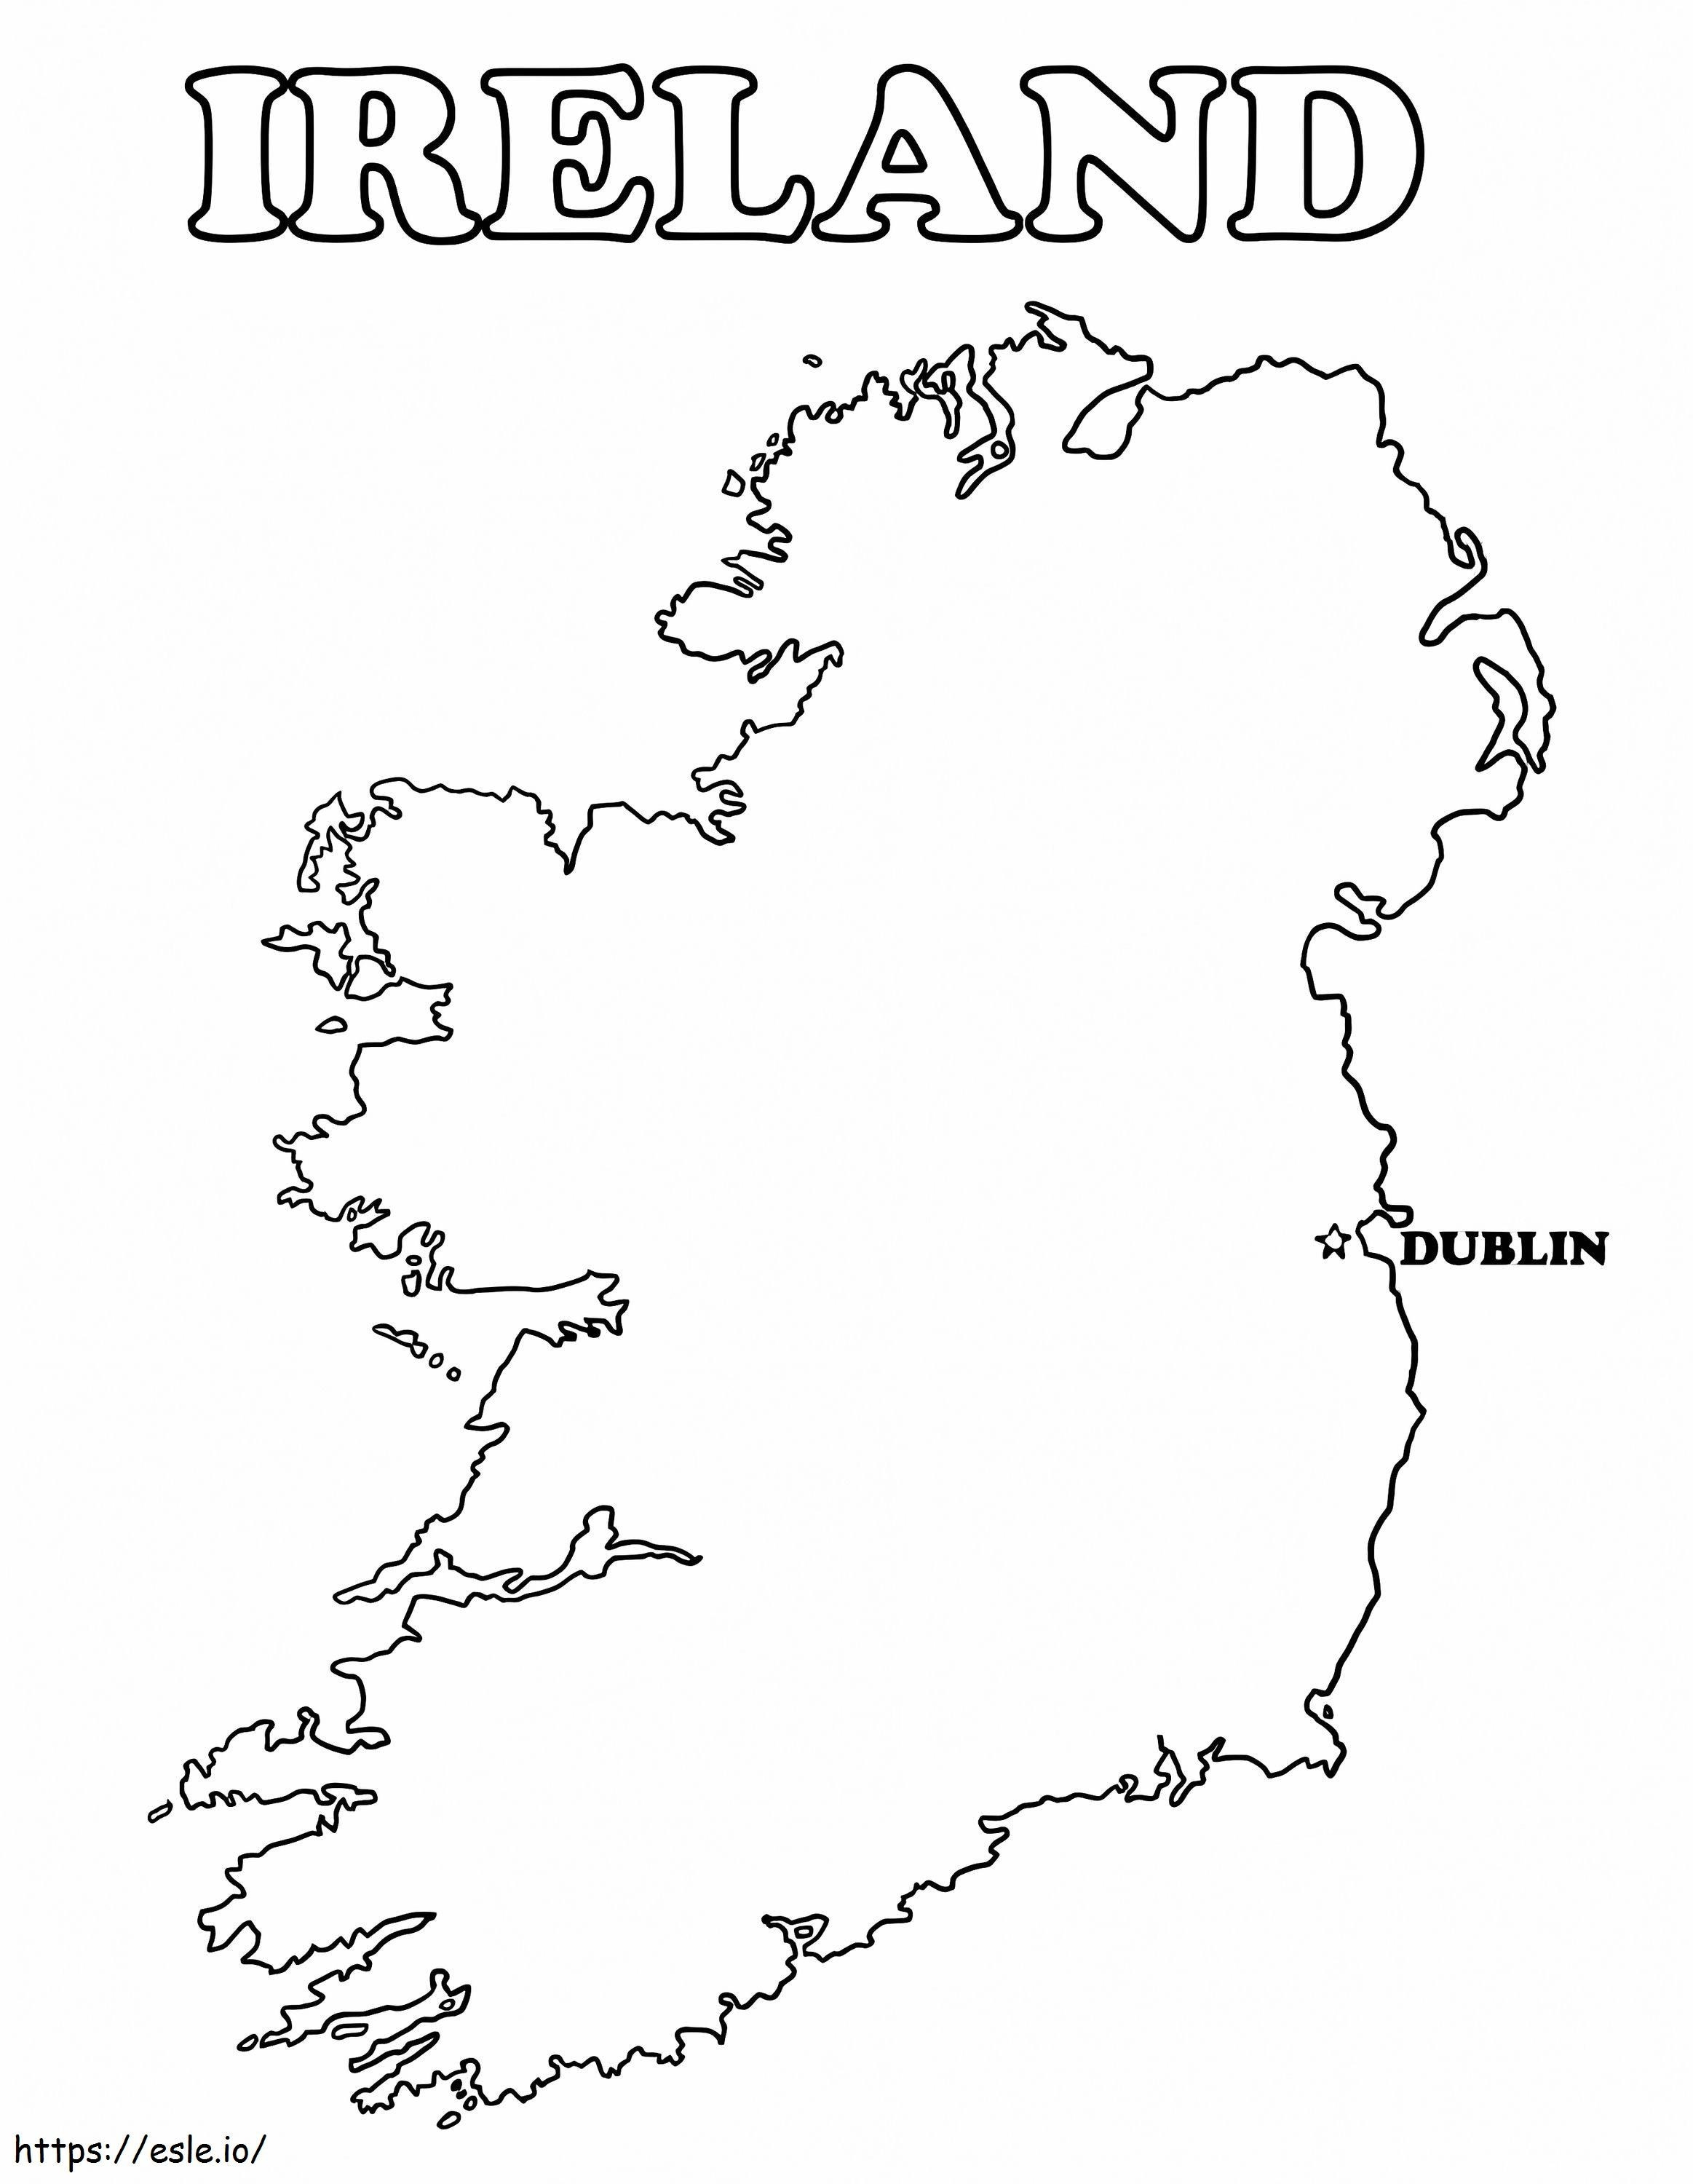 Karte von Irland 3 ausmalbilder